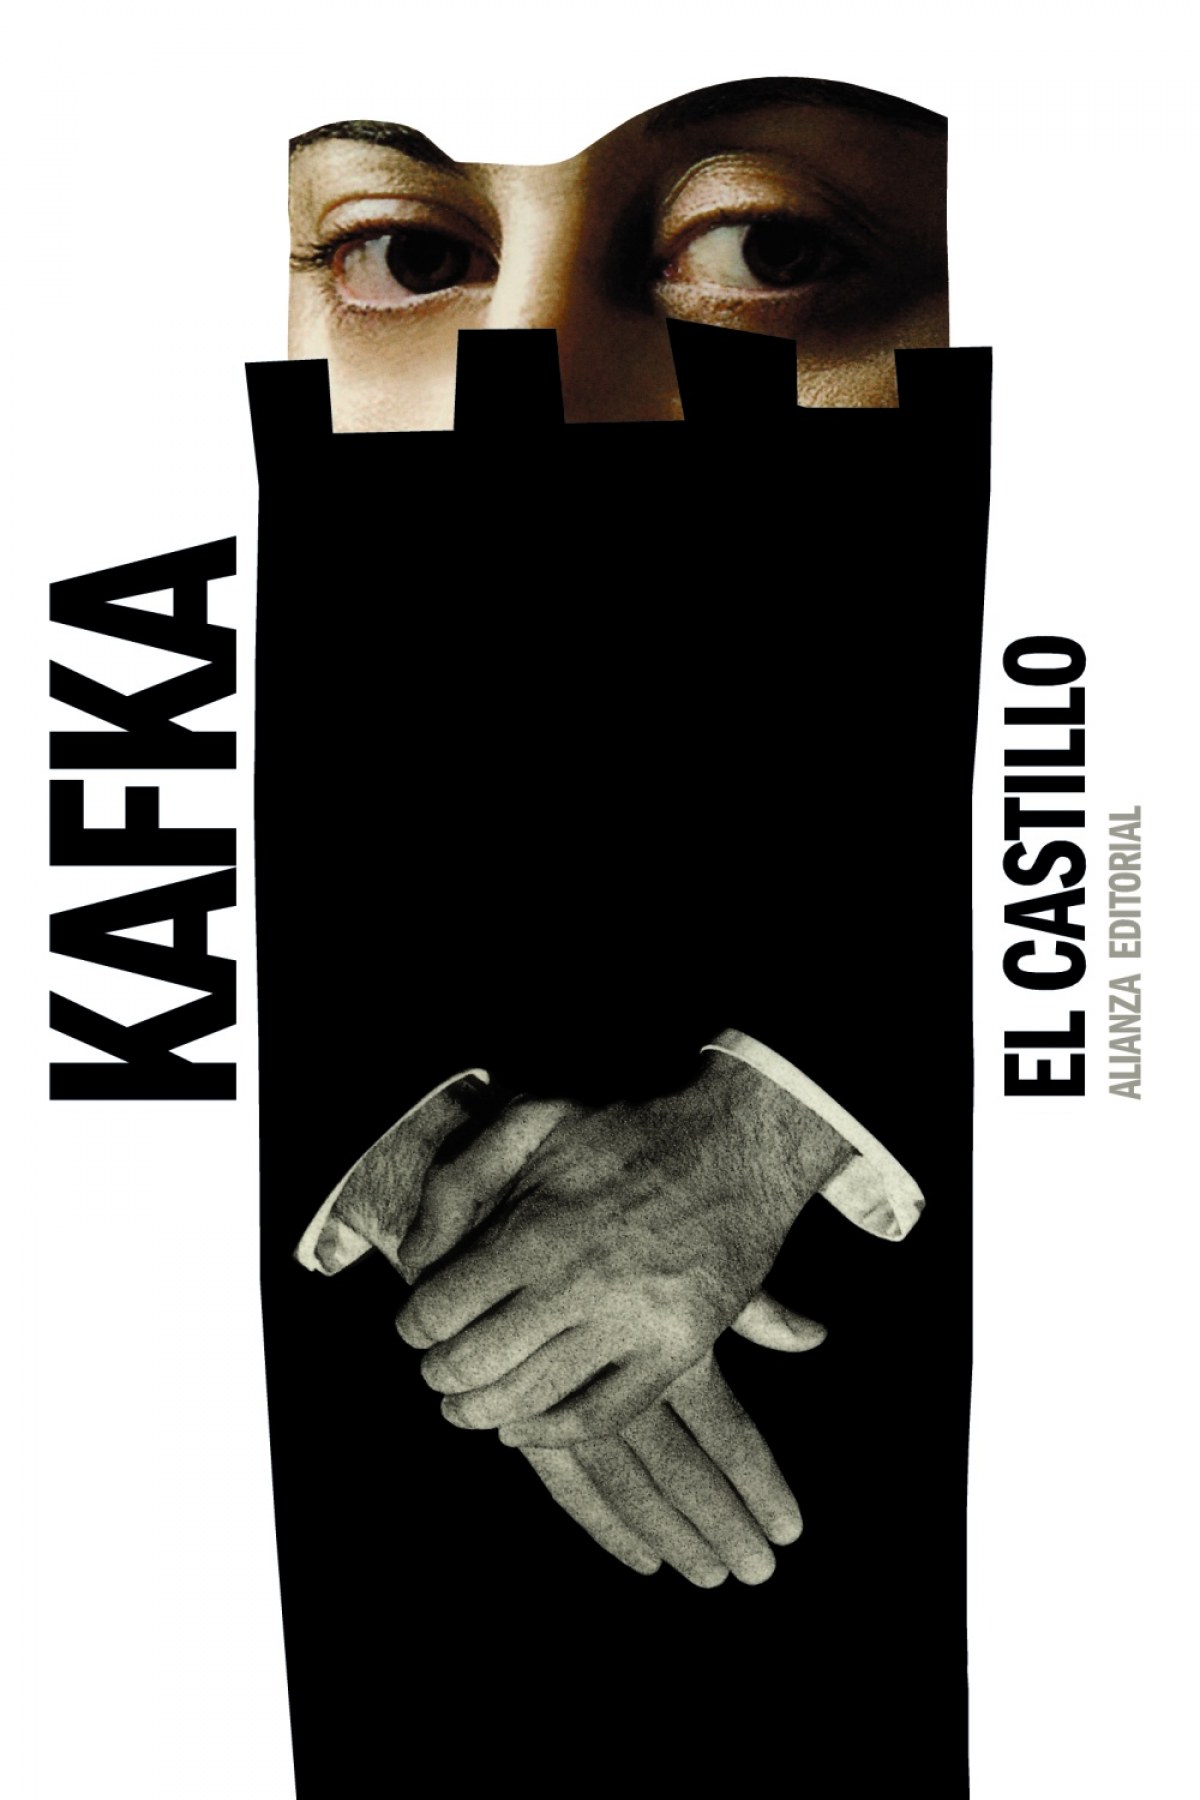 El castillo - Kafka, Franz